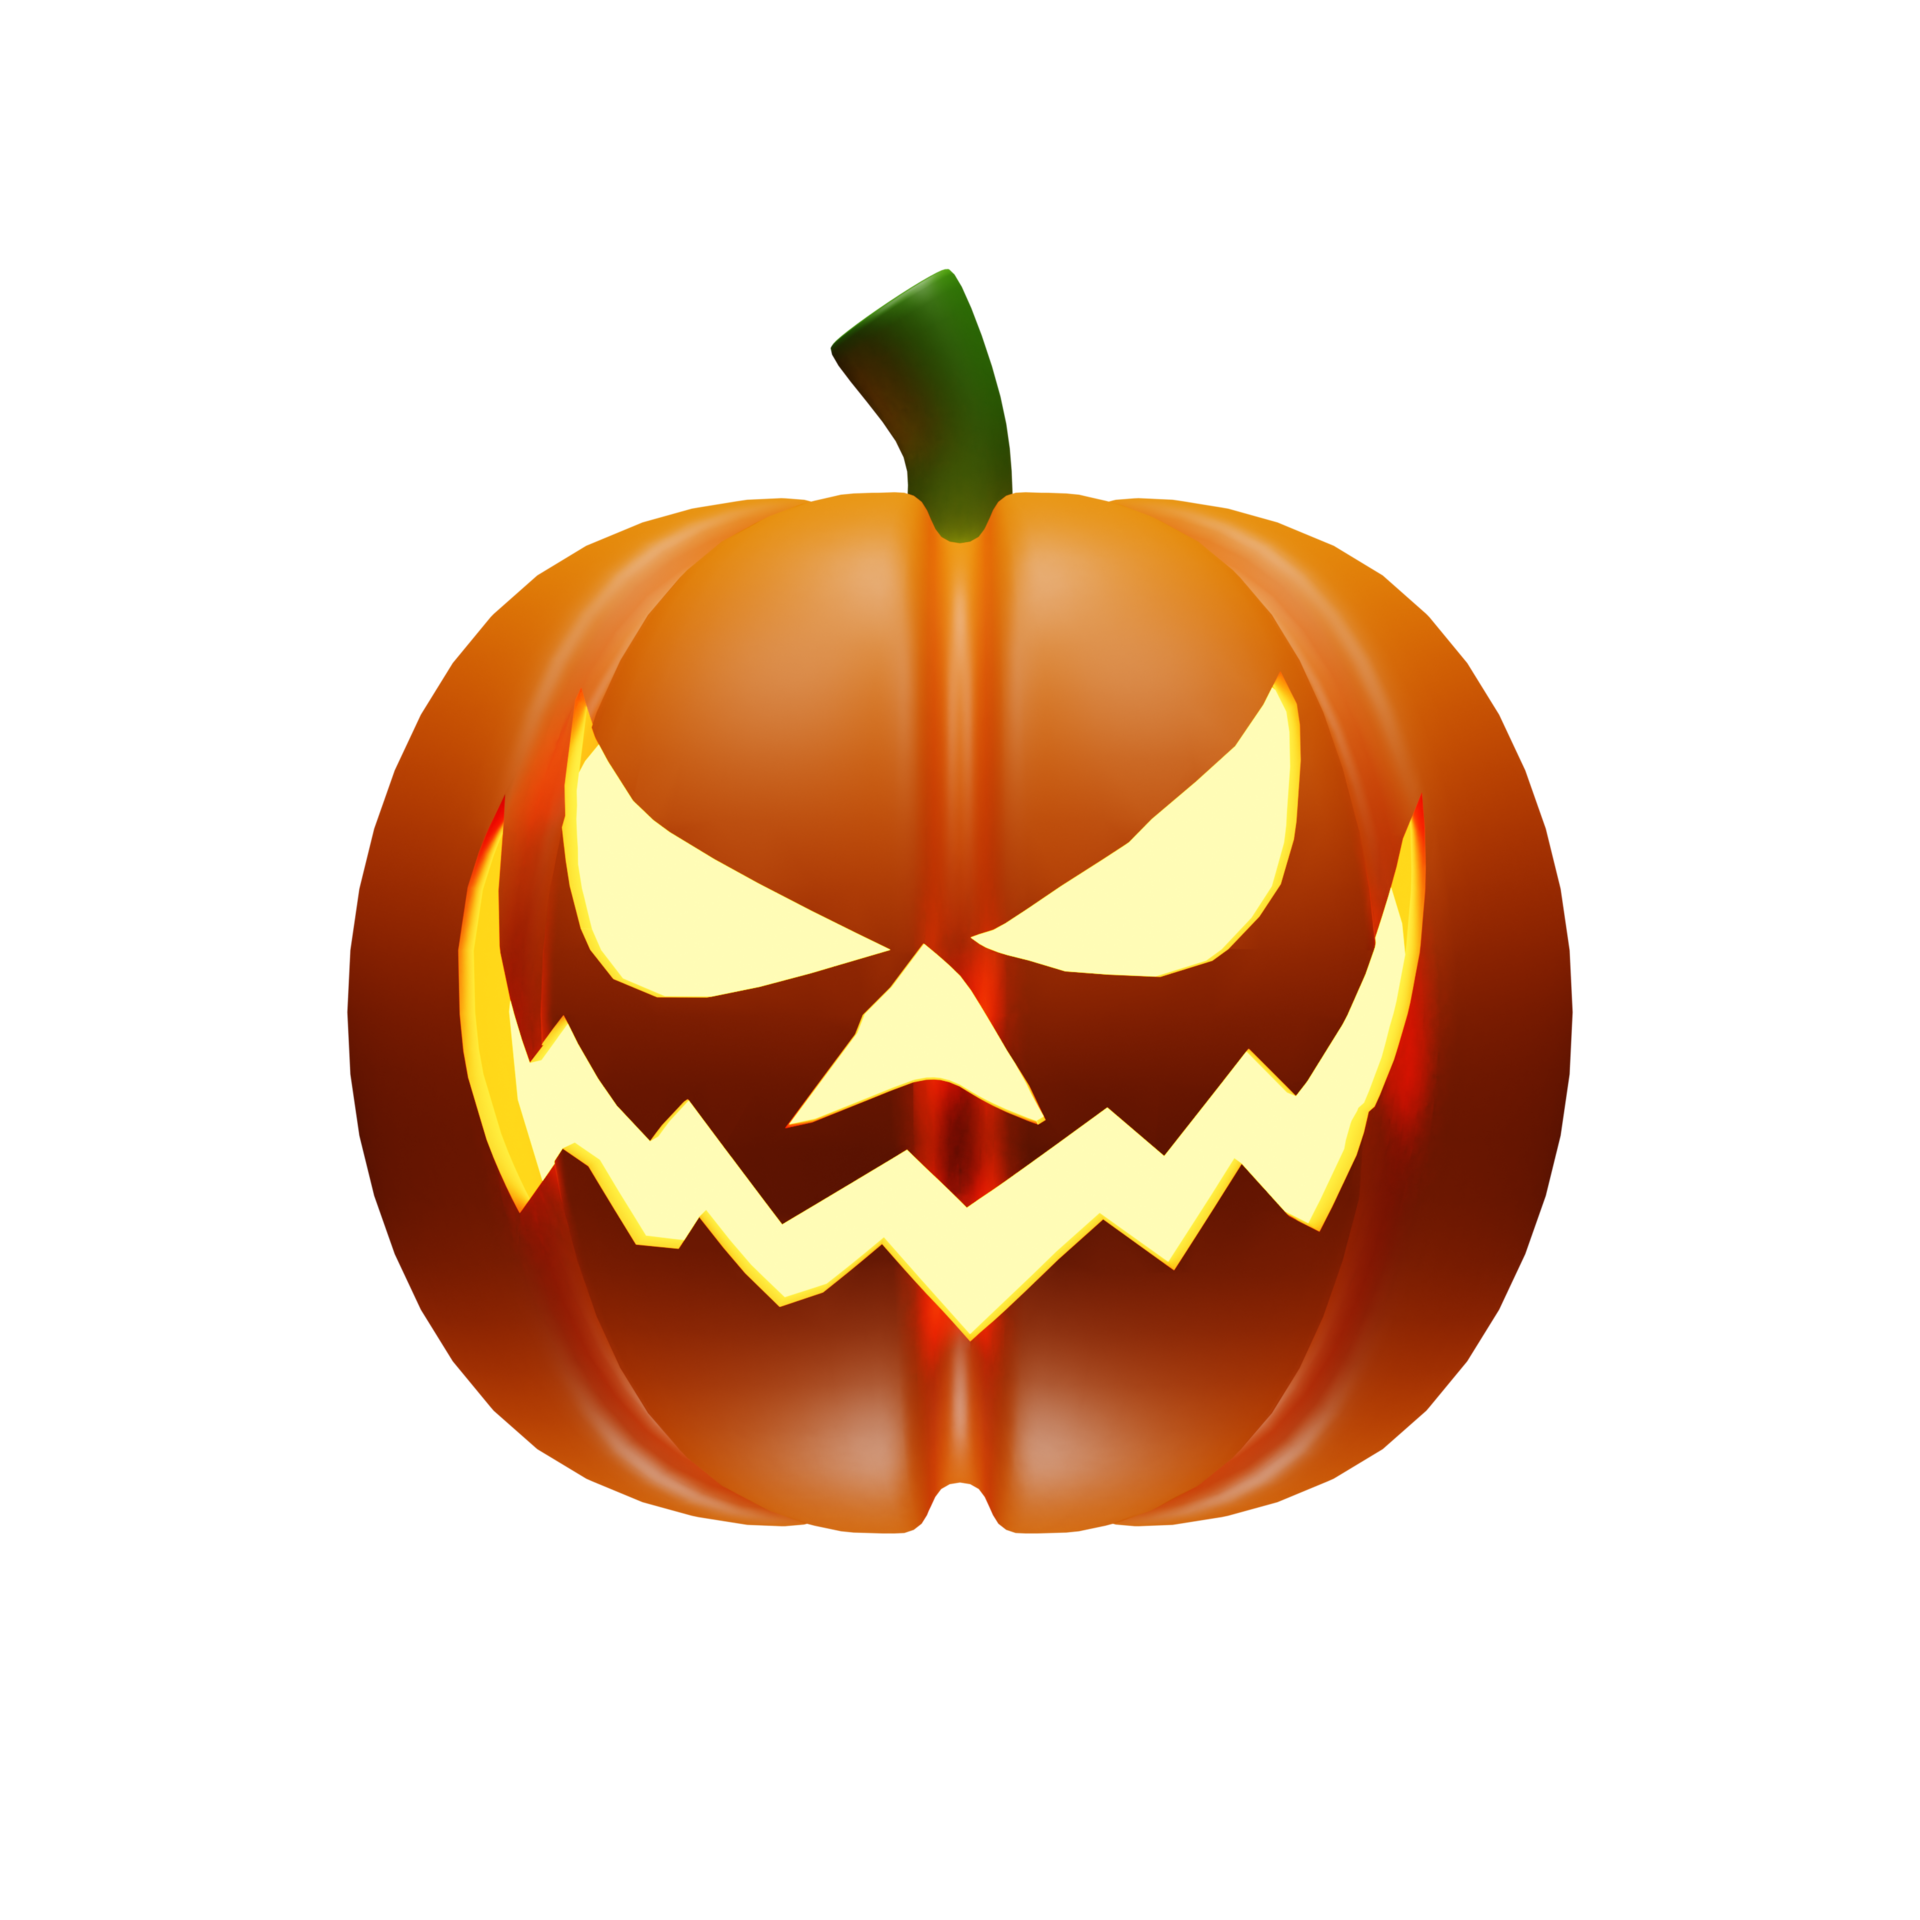 Abóbora De Halloween Com Cara Assustadora 3d Render Imagem